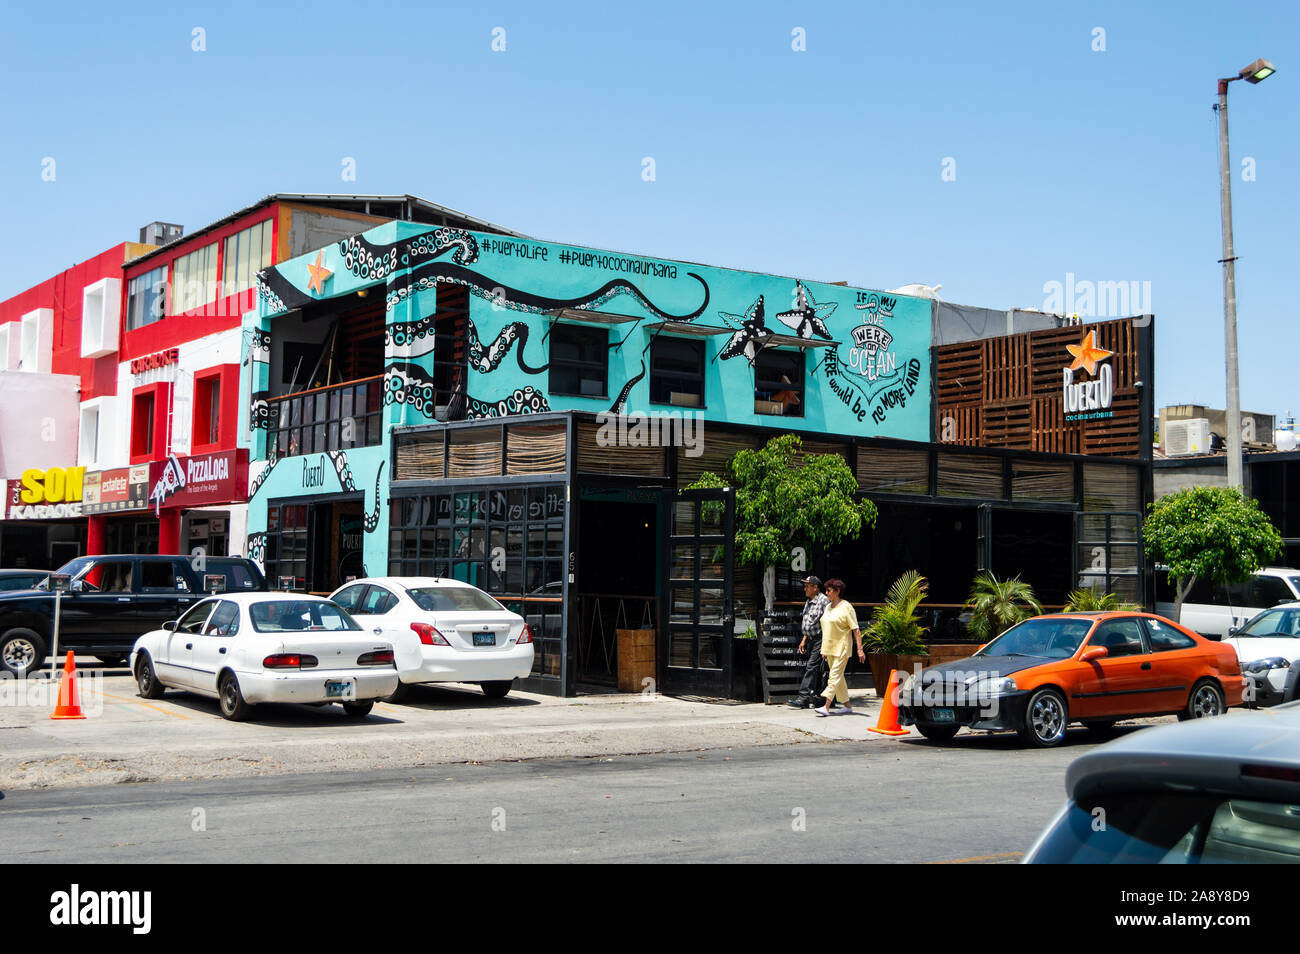 TIJUANA, MEXIQUE - 07/22 : Tijuana restaurant de fruits de mer, Porto, dans la zone de la rivière. L'embourgeoisement, hôtel d'affaires moderne et style hippie Banque D'Images